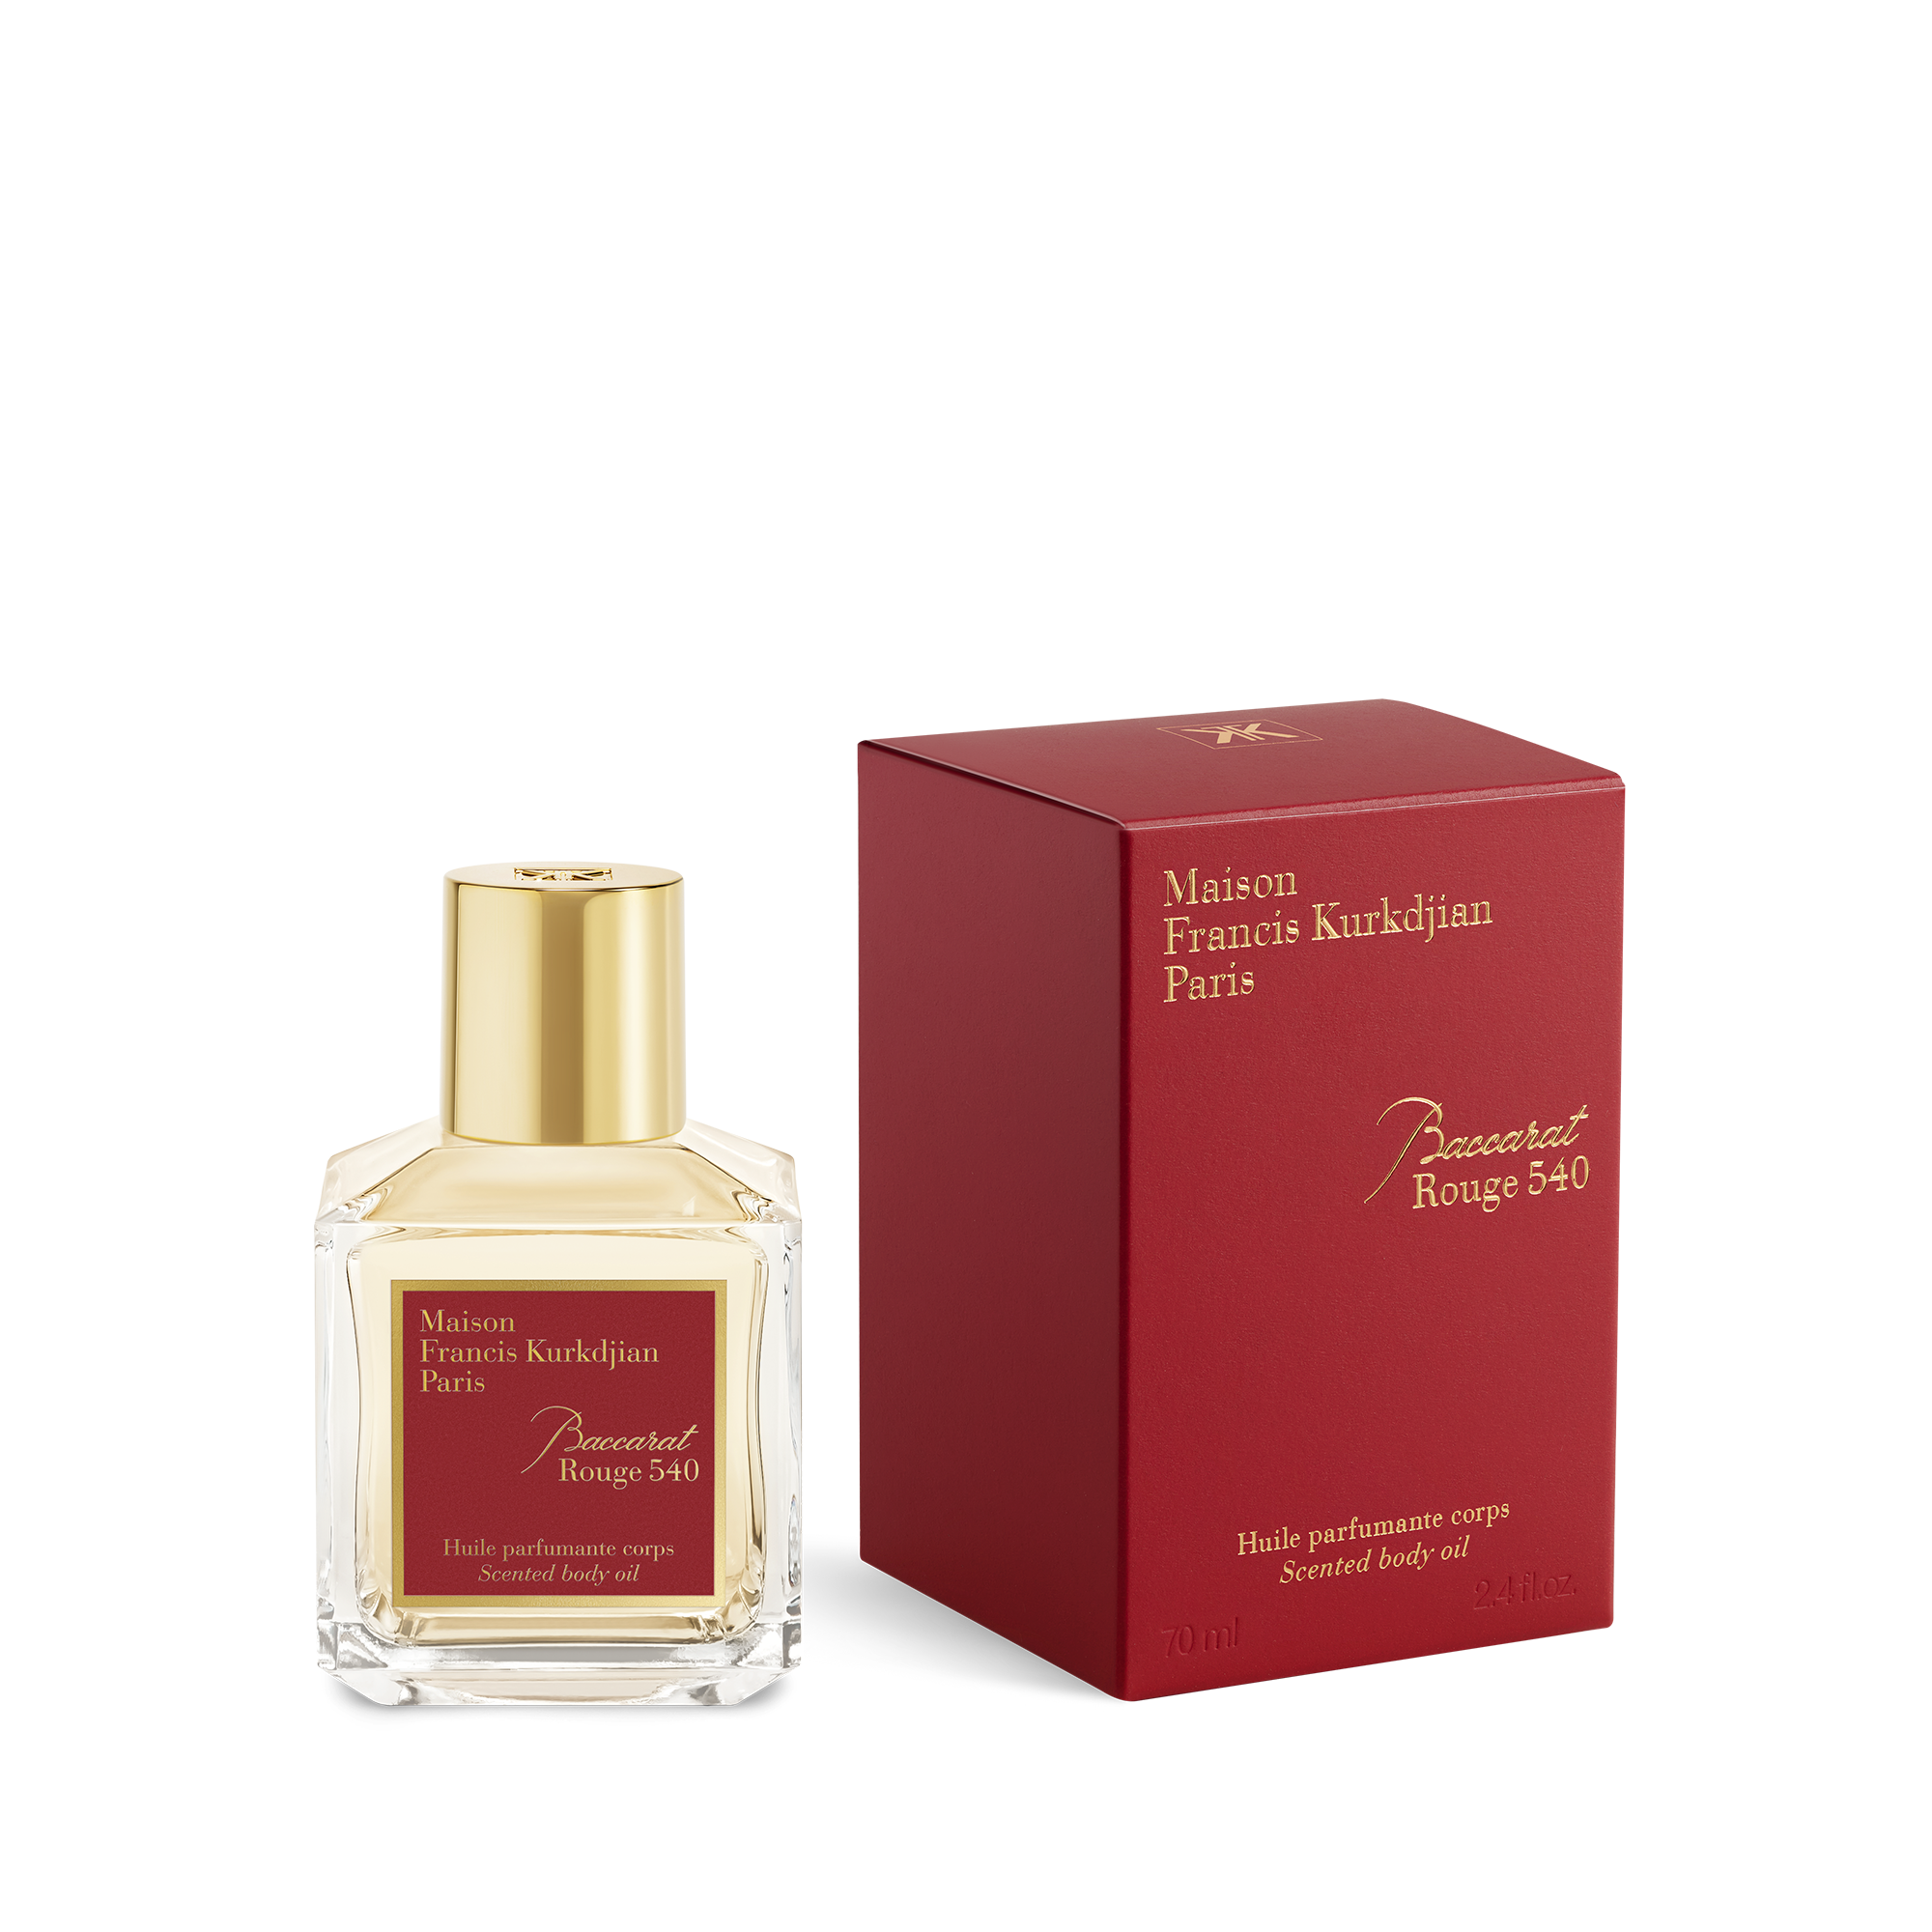 Baccarat Rouge 540 Fragrance Oil